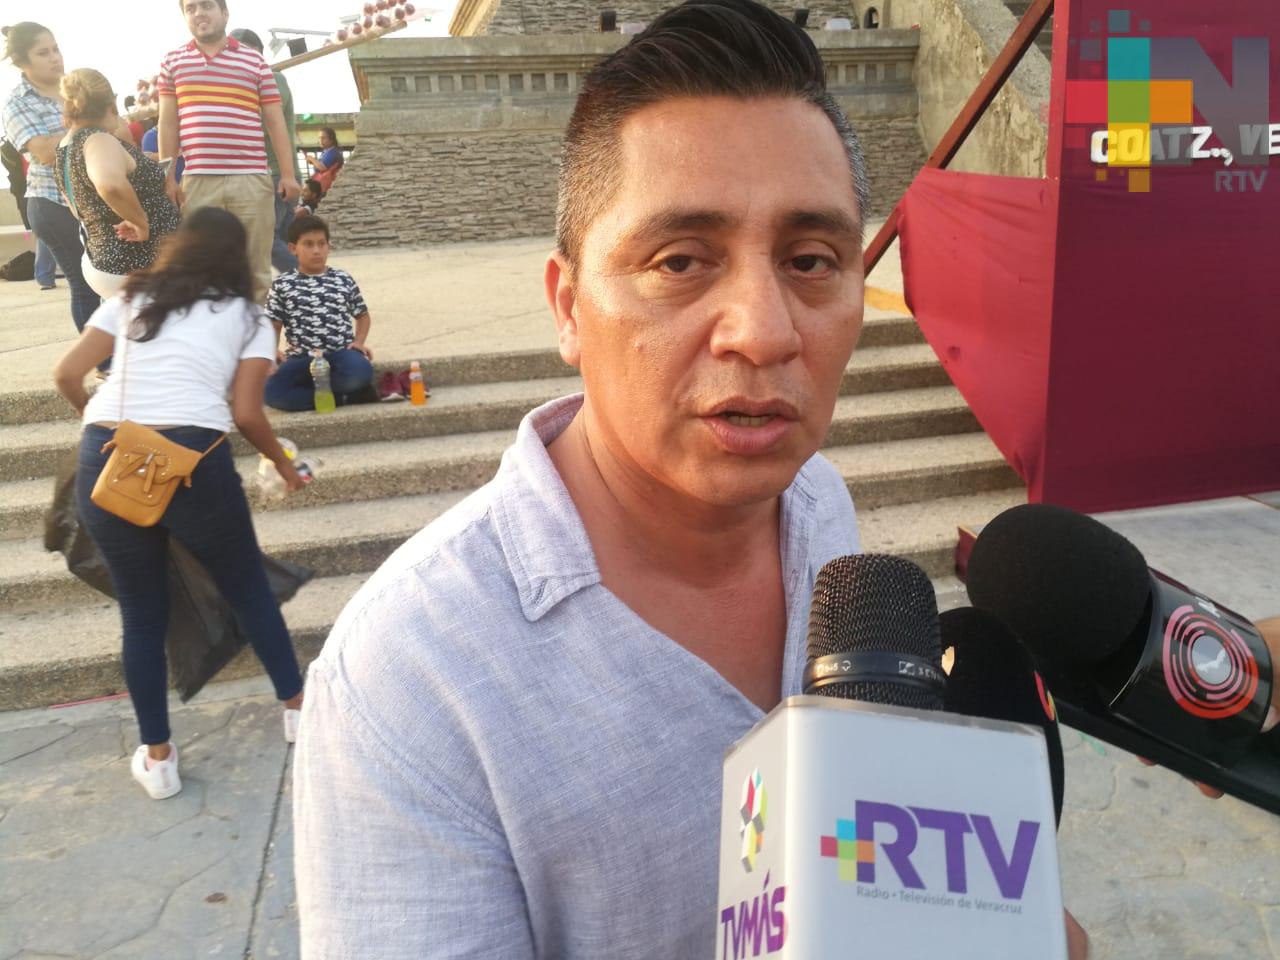 Aprobación de matrimonios igualitarios en Veracruz lucha pendiente para la comunidad LGBT